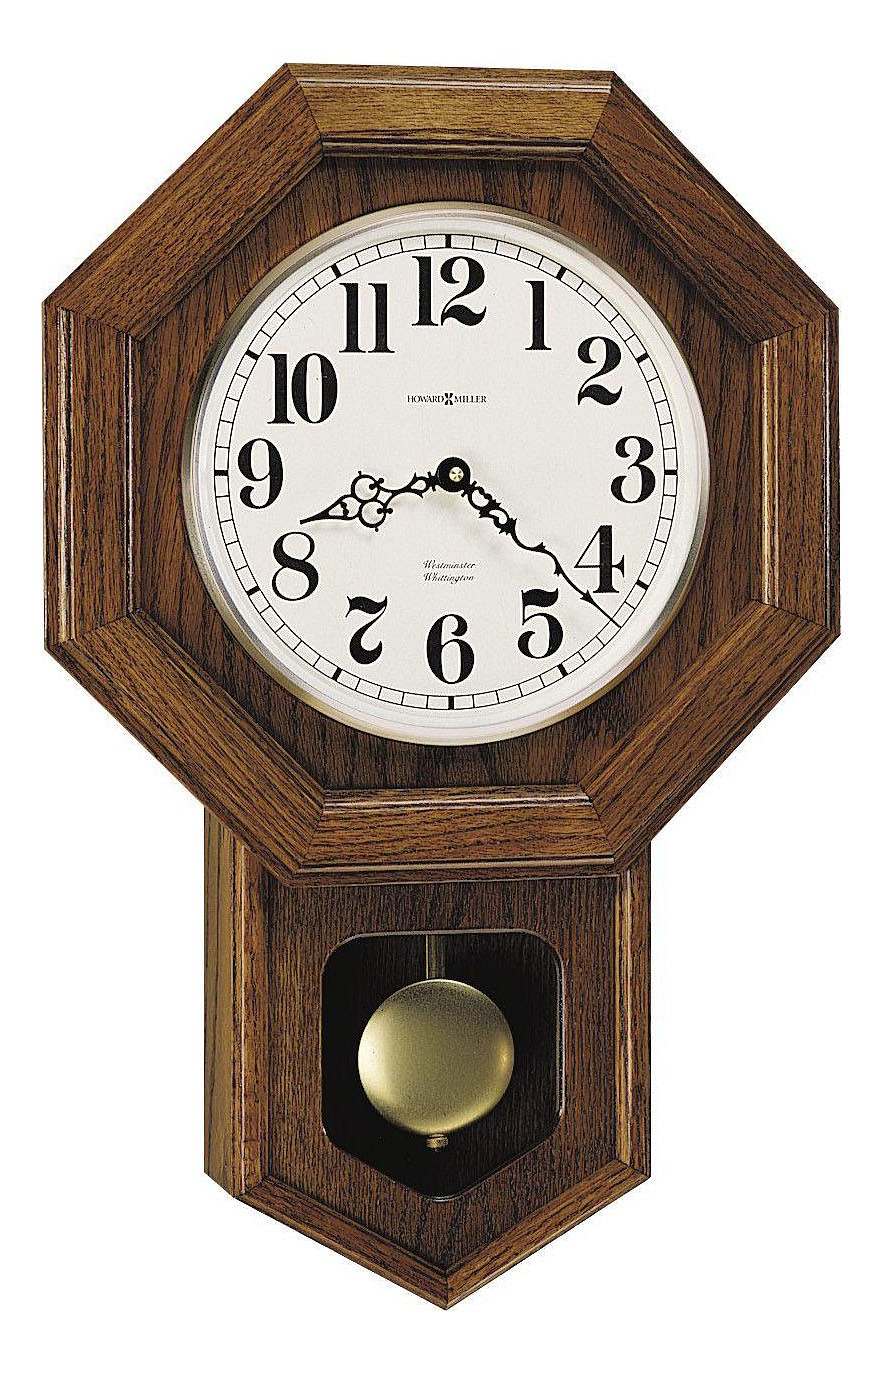 Часы 35 см. Часы Howard Miller с маятником. Часы Ховард Миллер 620-. Часы настенные с маятником Howard Miller. Часы Ховард Миллер настенные с маятником.